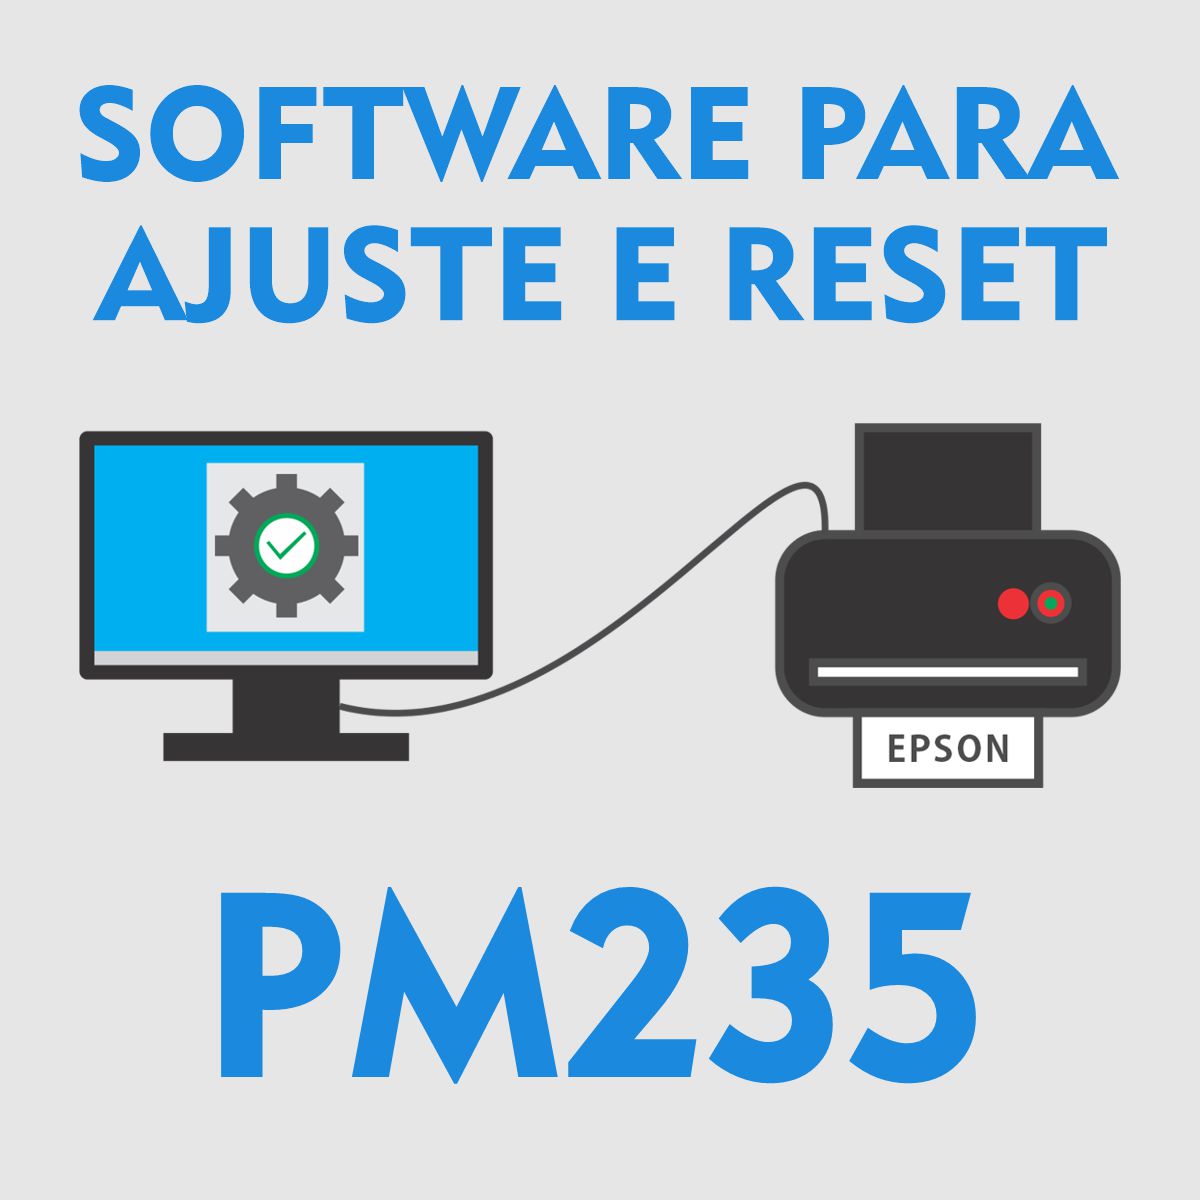 Epson Pm235 Software Para Ajustes E Reset Das Almofadas Reseters E Softwares Fórum Sulink 6090